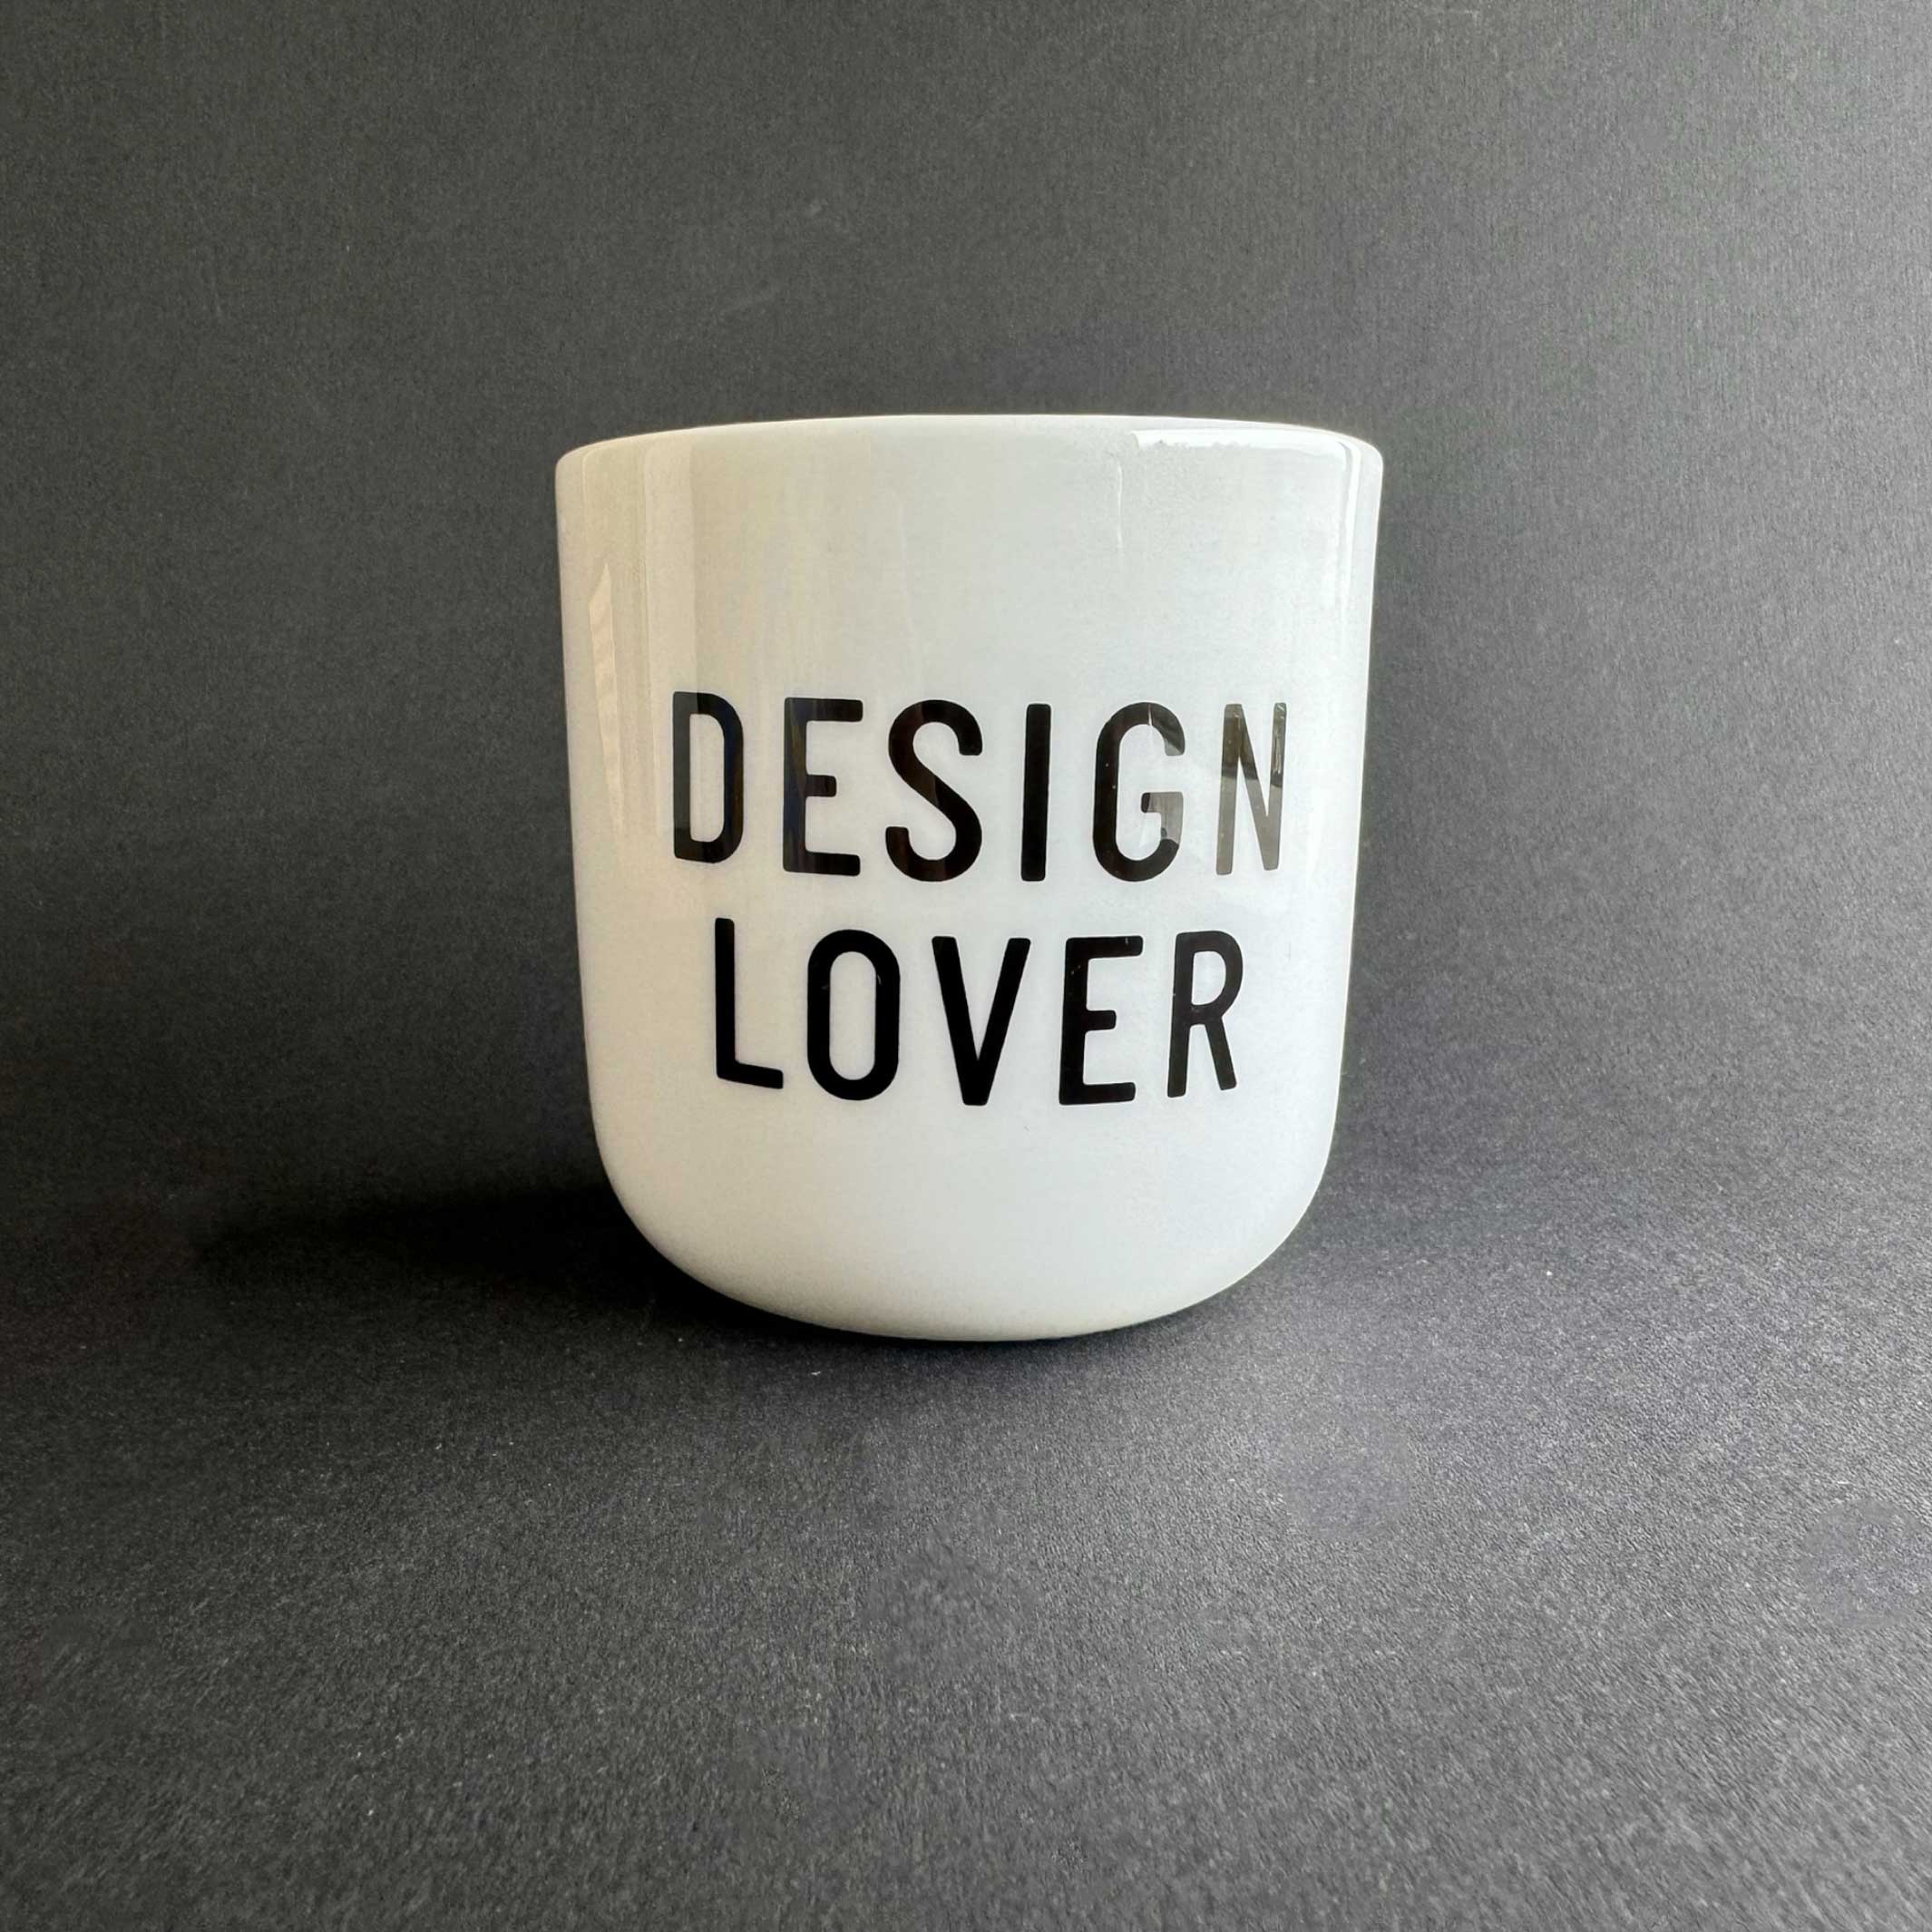 DESIGN LOVER | weisser Kaffee- & Tee-BECHER mit schwarzer Typo | PLTY